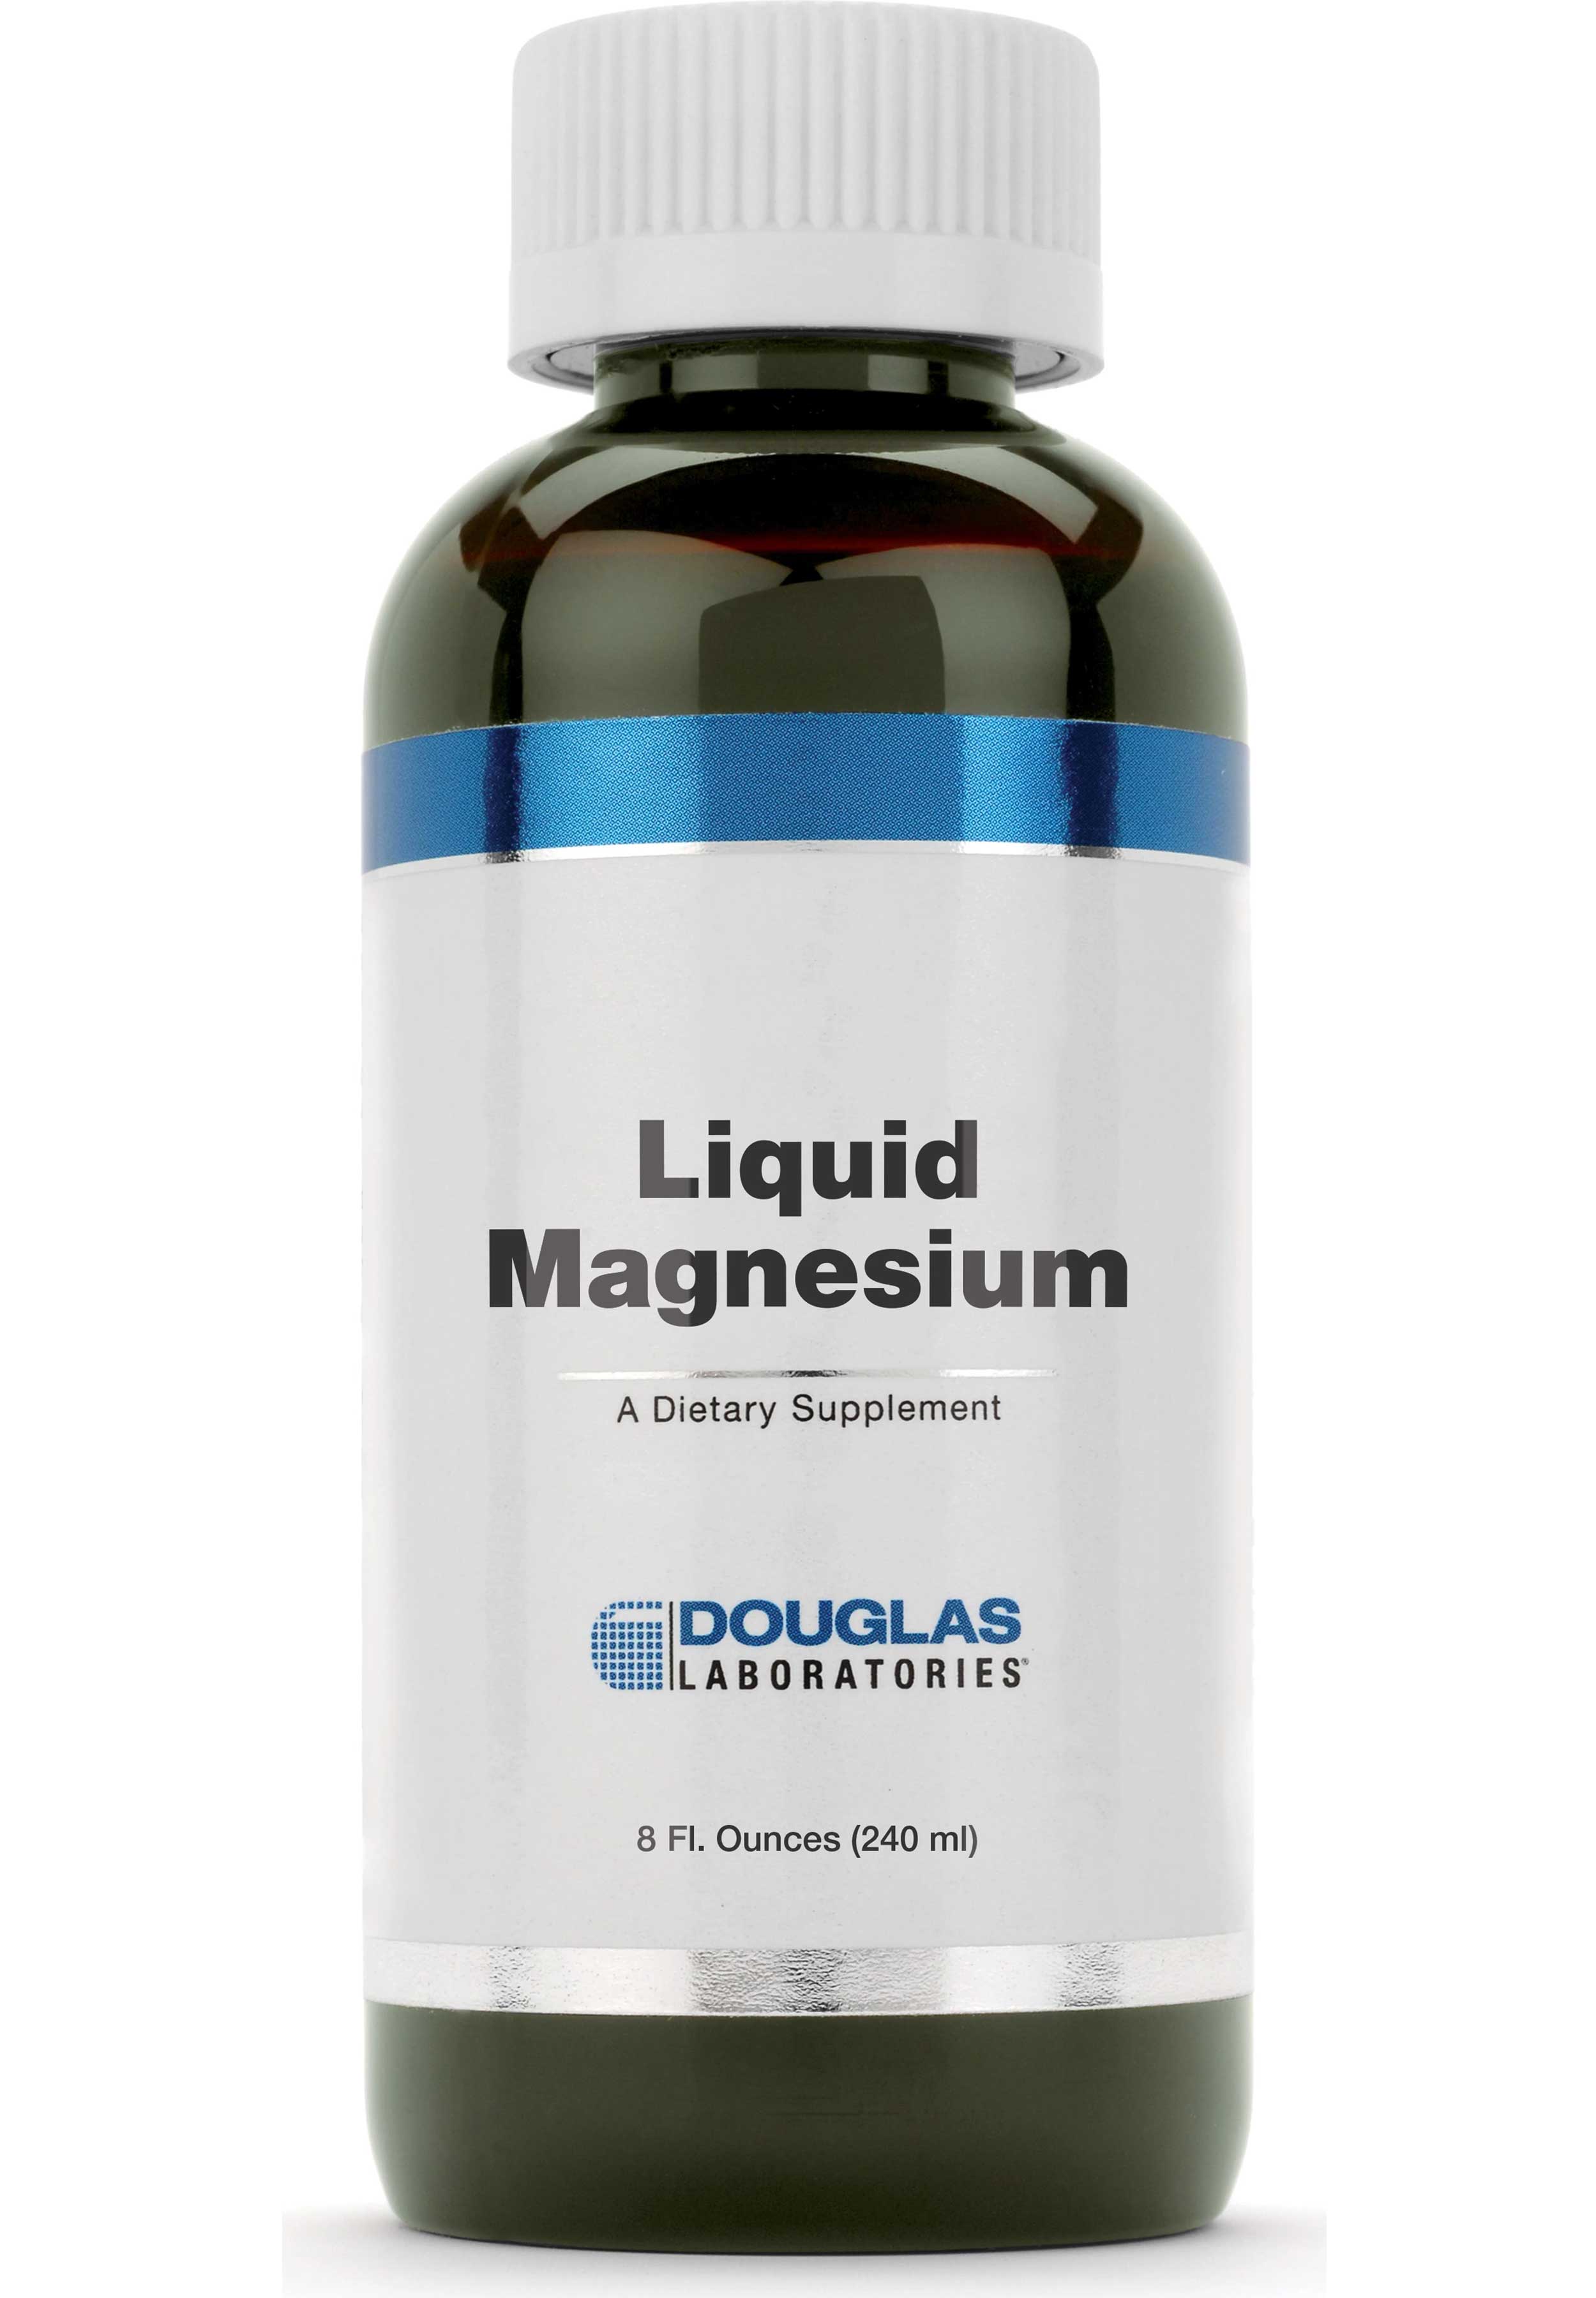 Douglas Laboratories Liquid Magnesium